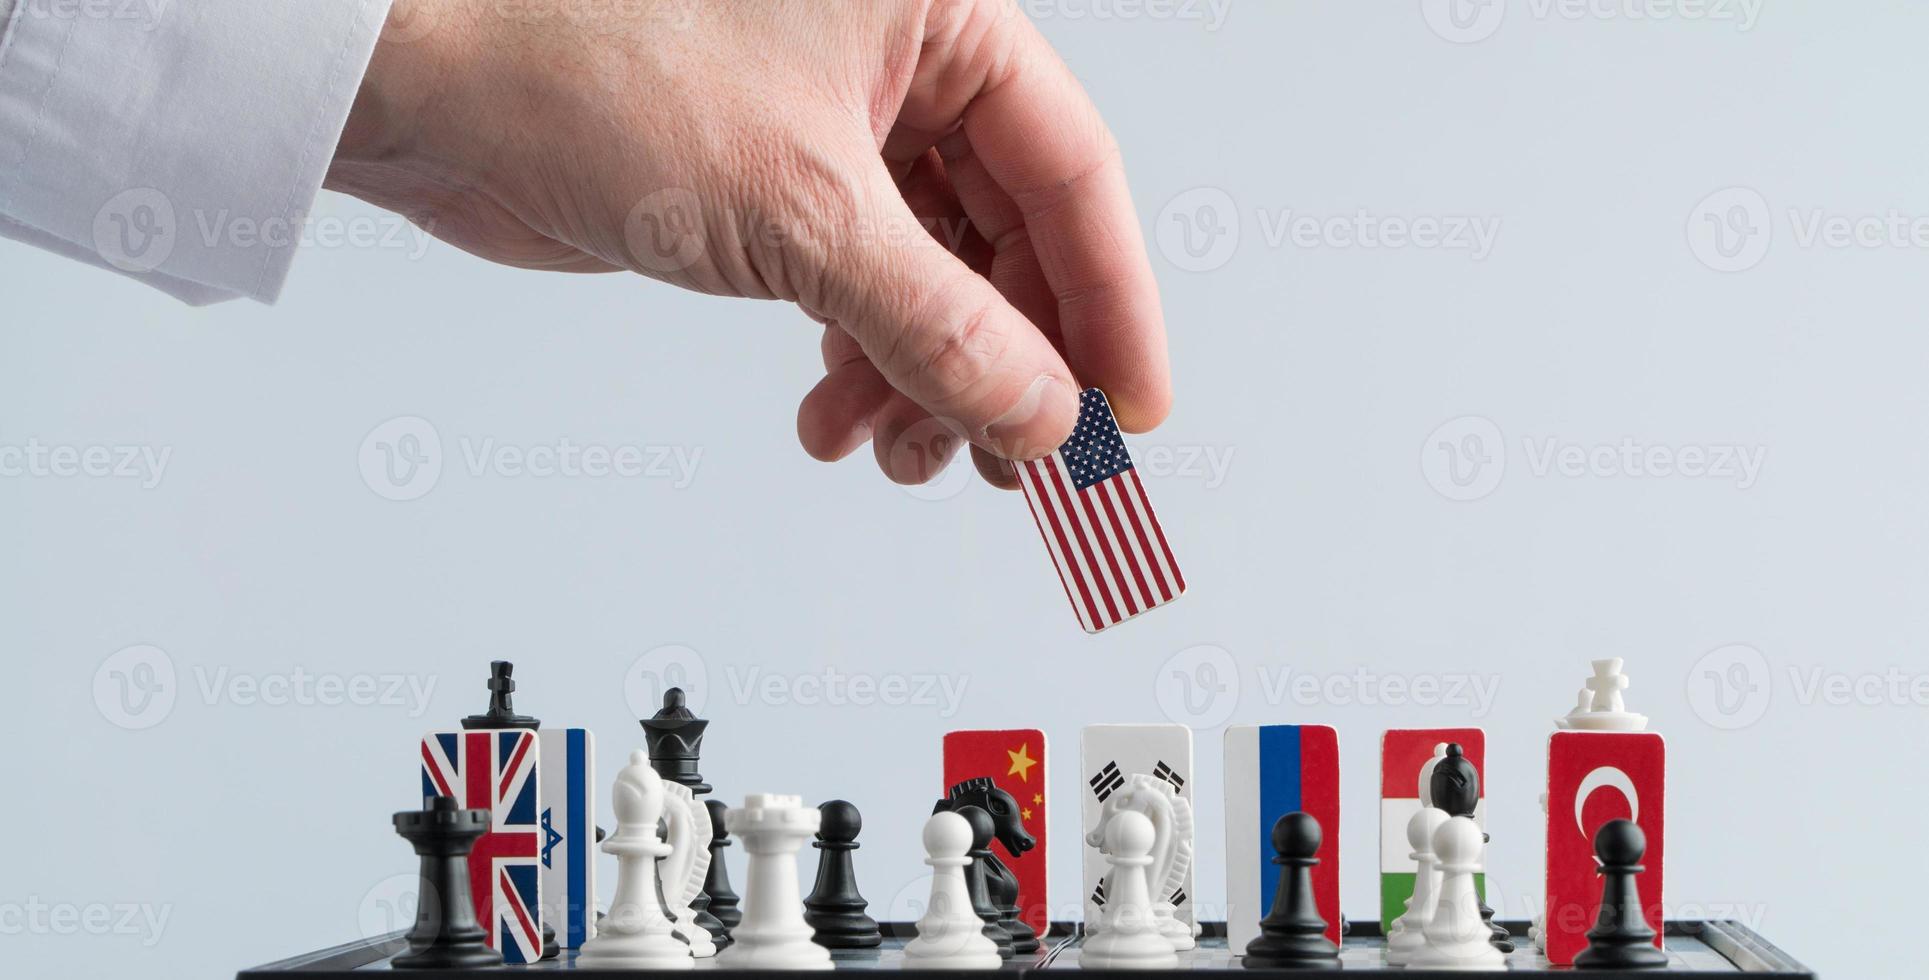 la mano del político mueve una pieza de ajedrez con una bandera. foto conceptual de un juego político. movimiento de represalia ee.uu.